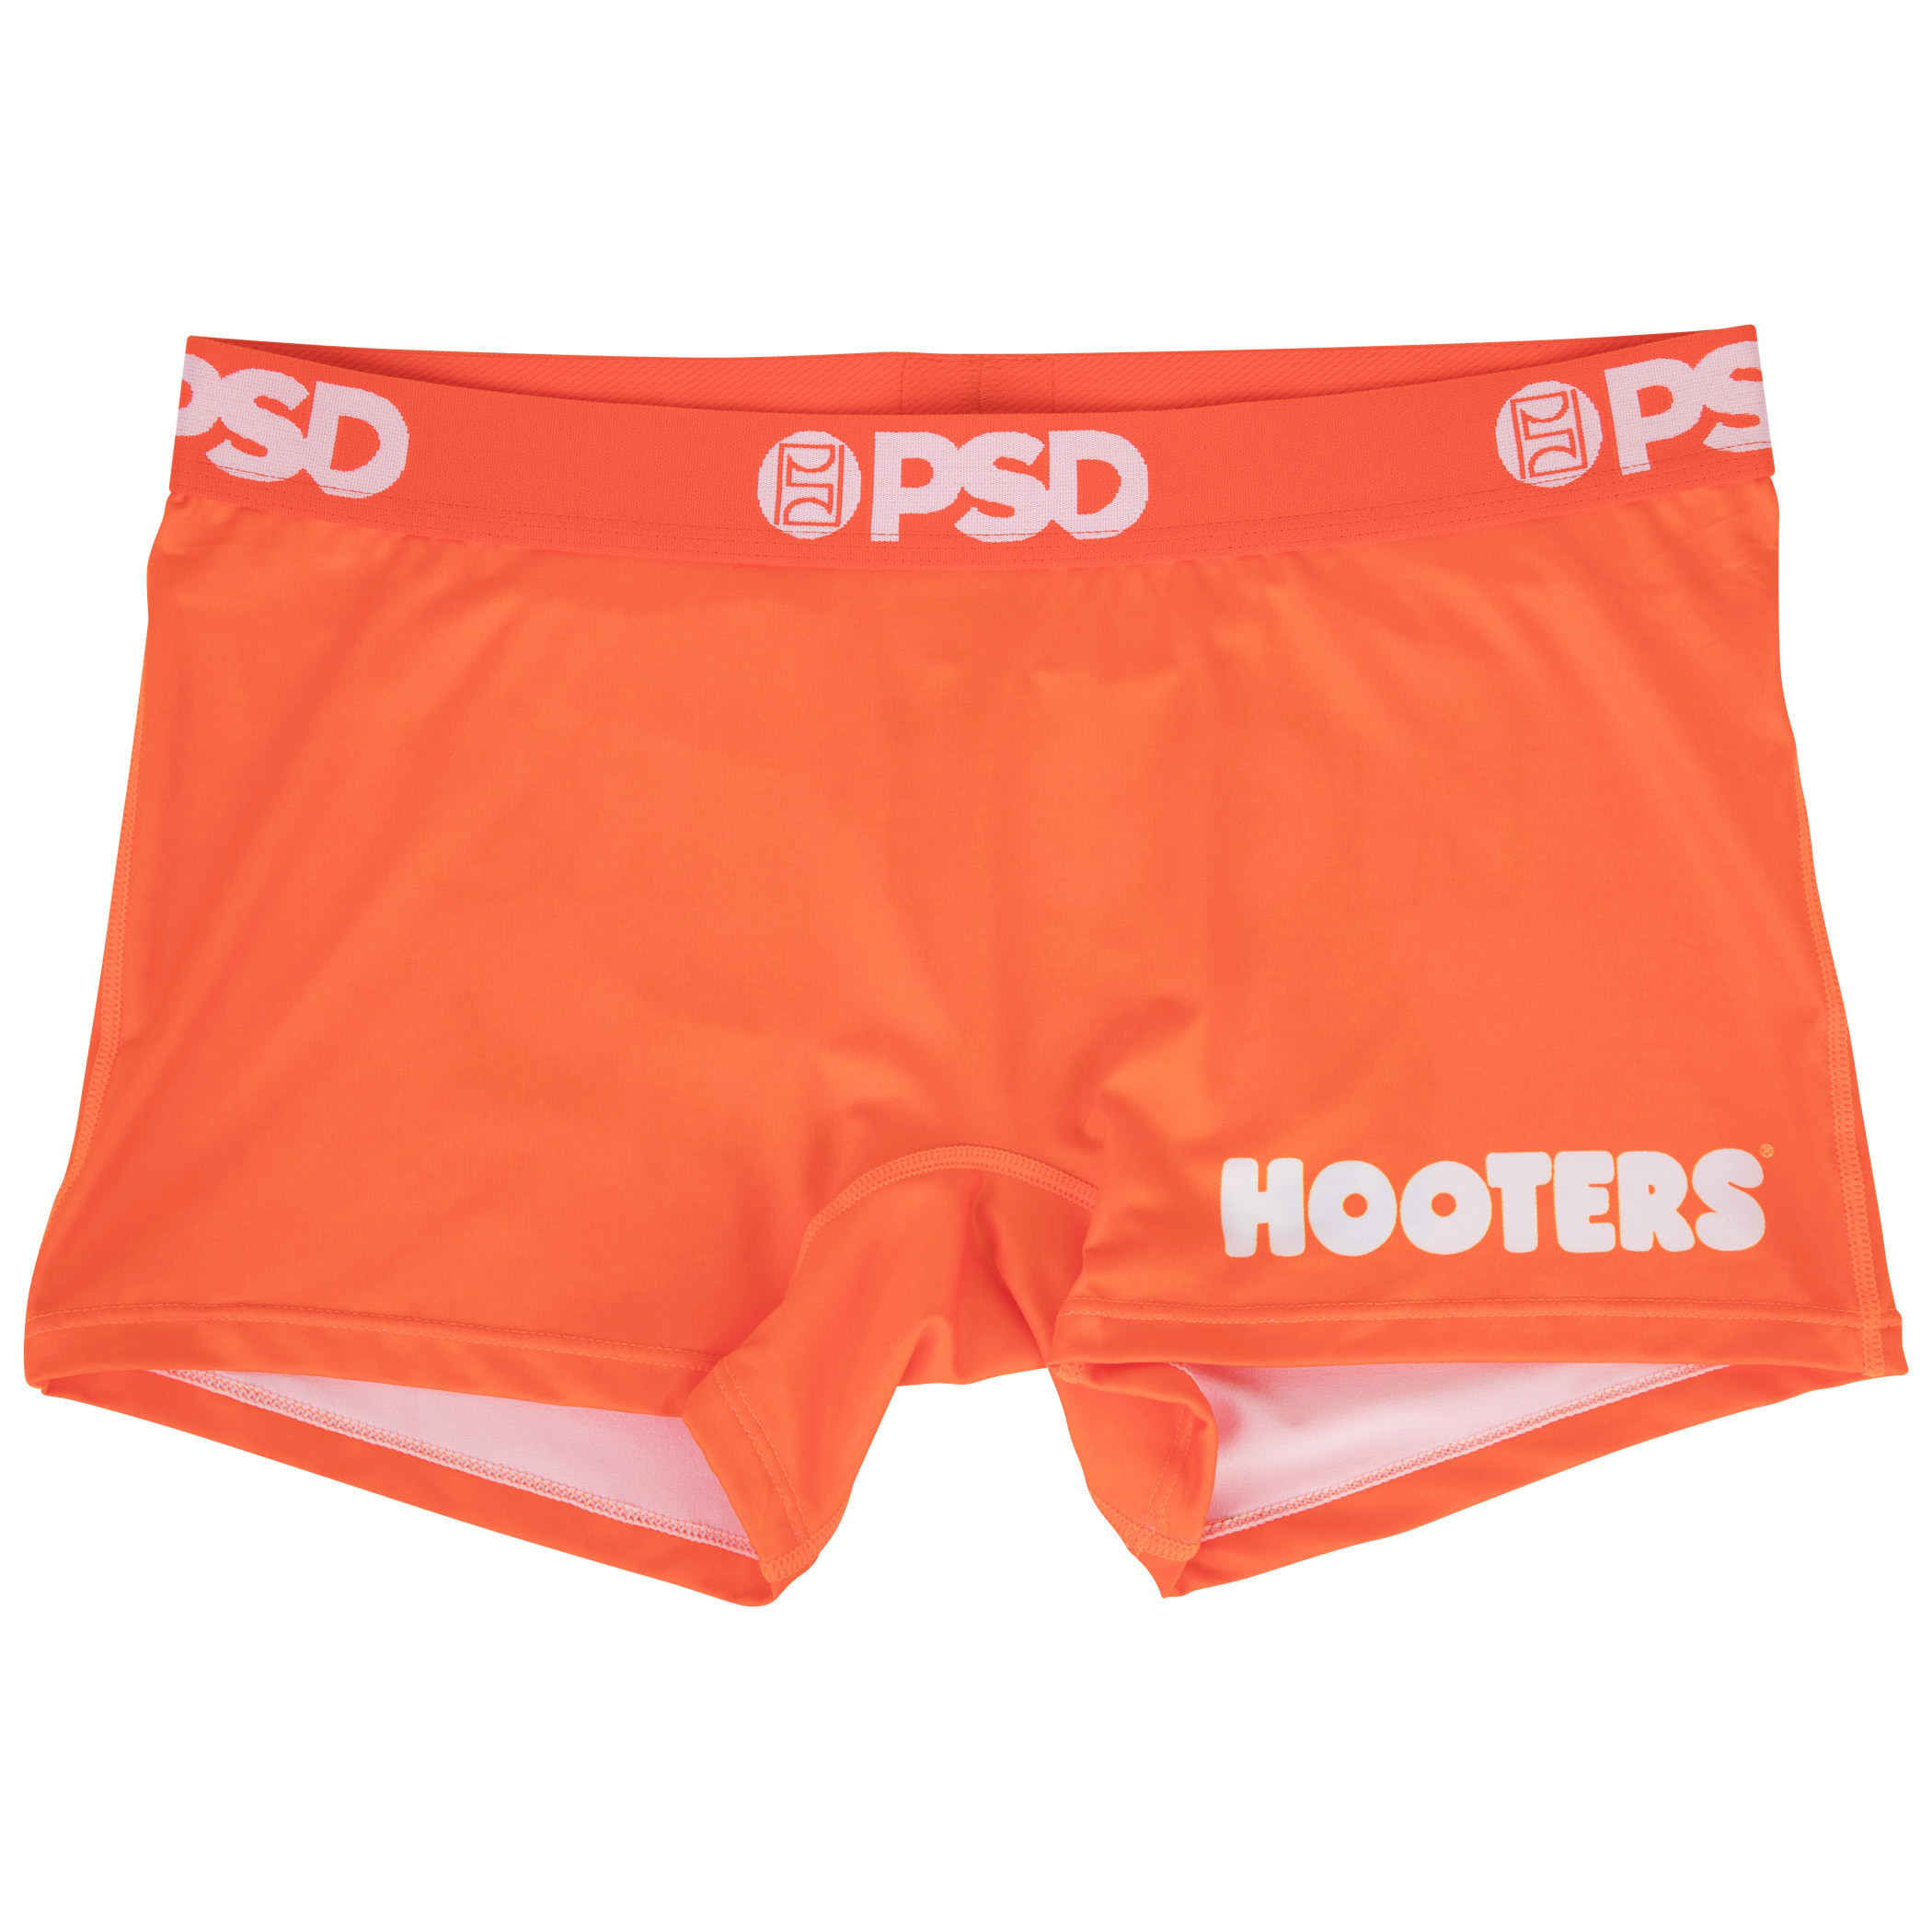 PSD: Hooters Women's Boy Shorts, Women's